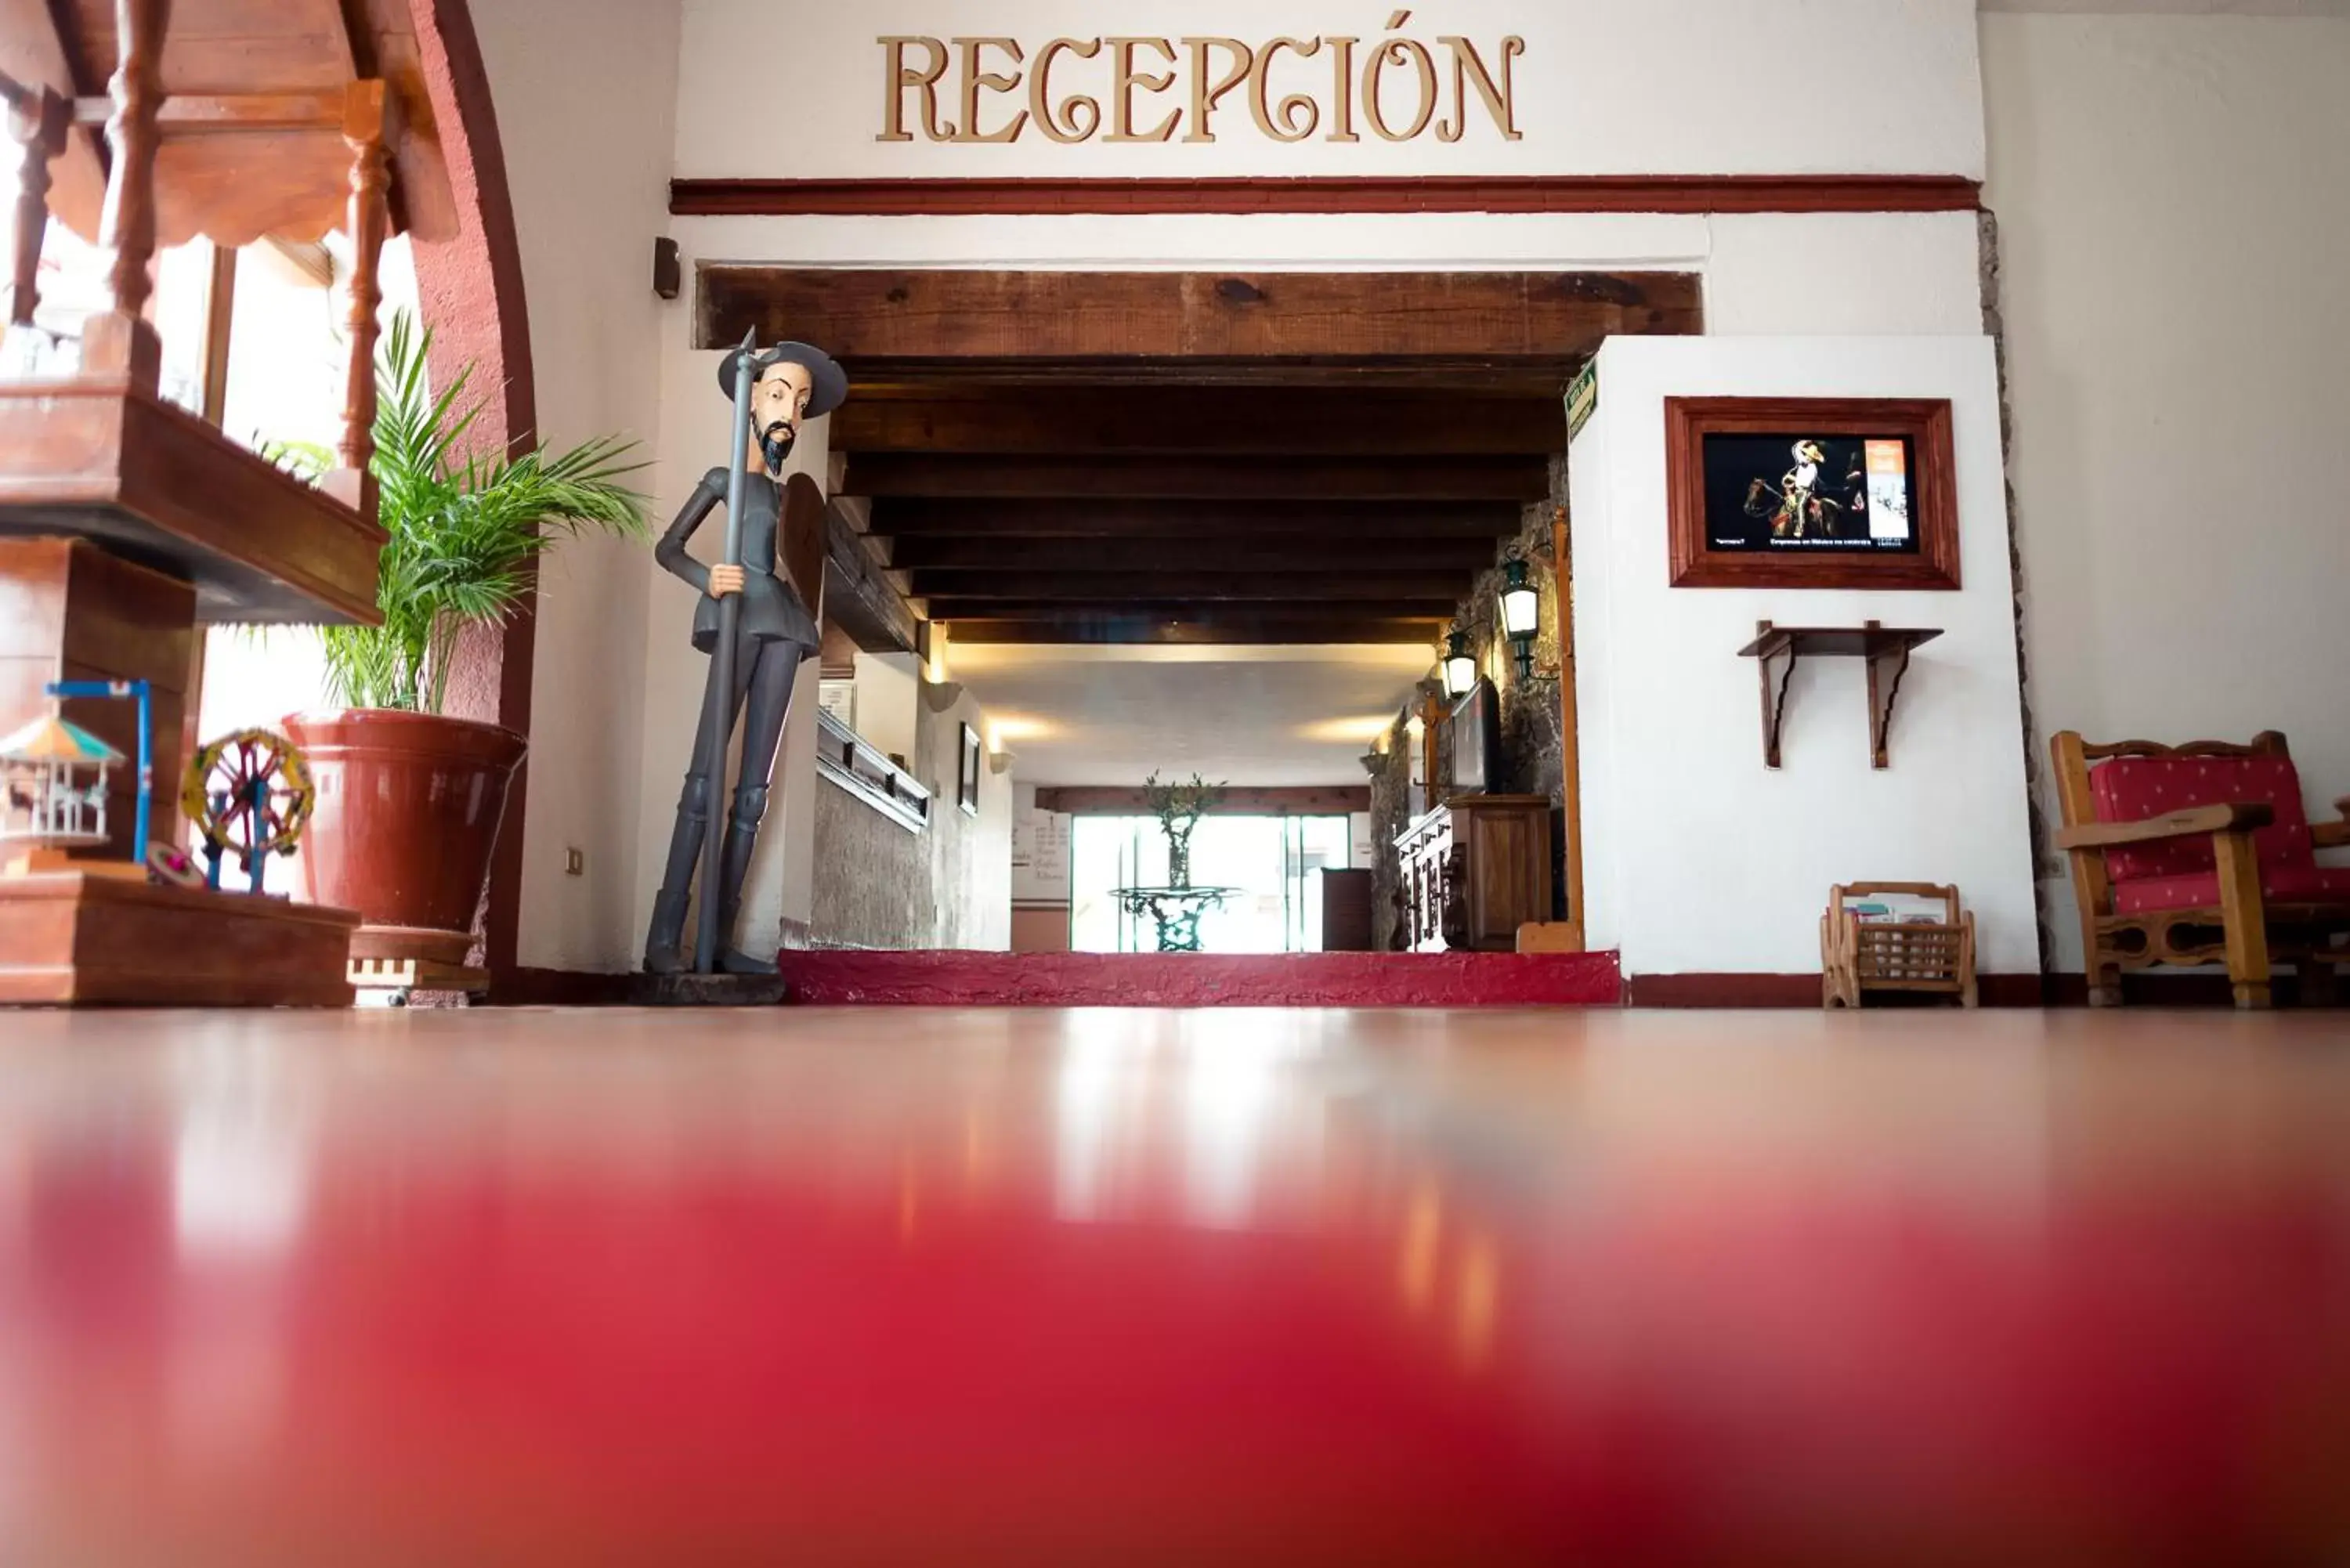 Lobby or reception in Mision Guanajuato